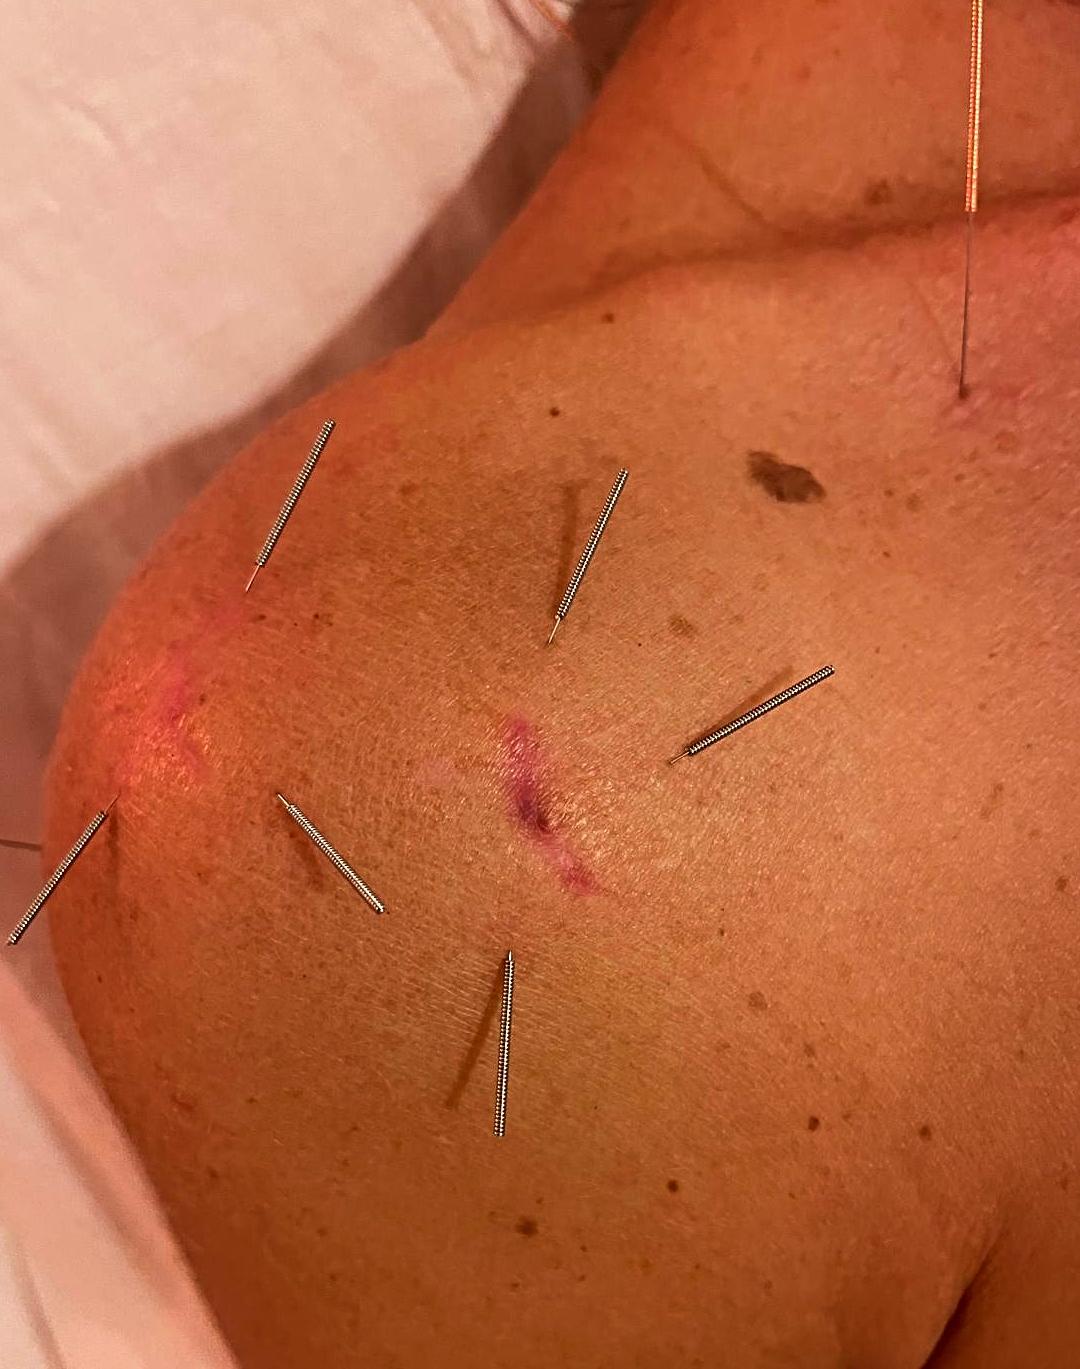 Acupuntura Post Cirugía Artroscópica de hombro/ Acupuncture after Shoulder Arthroscopy Surgery